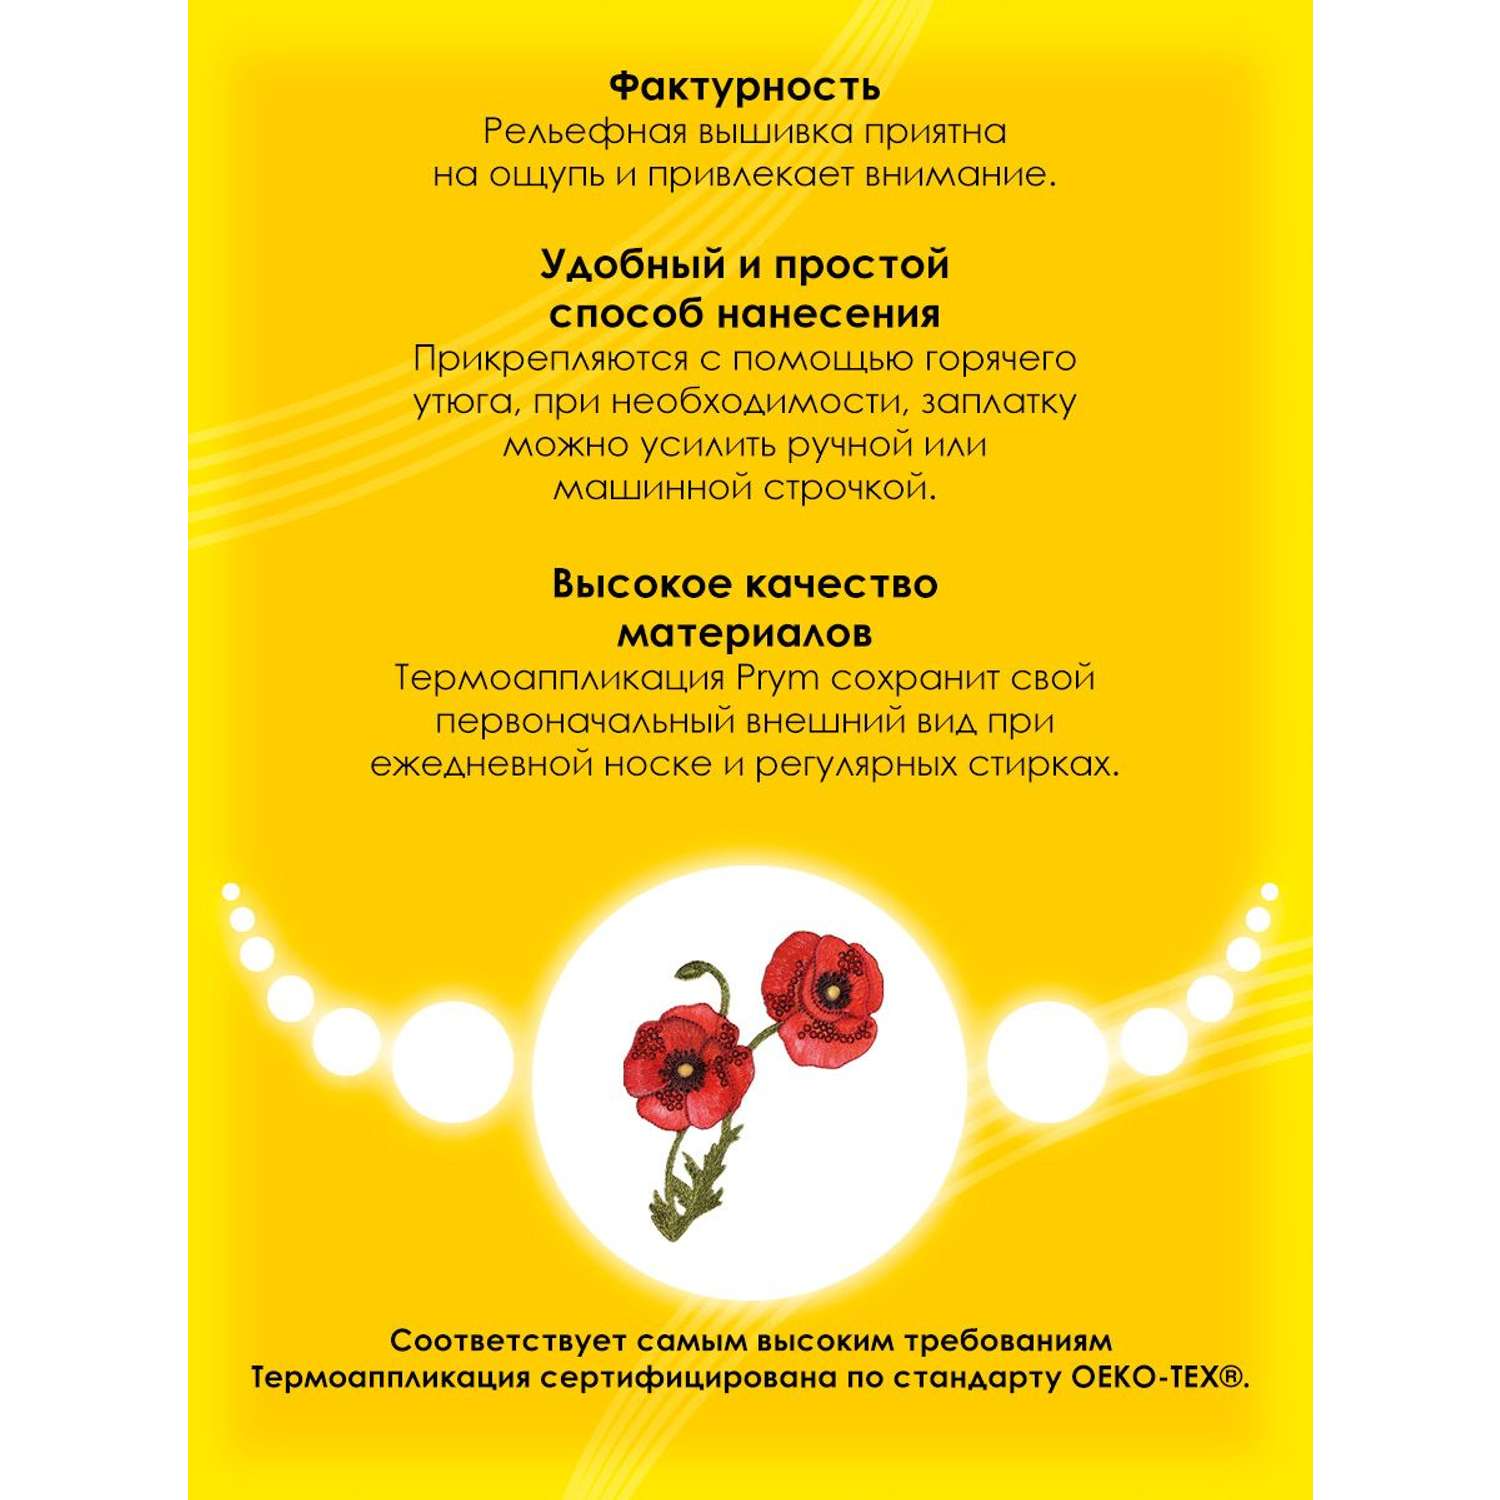 Термоаппликация Prym нашивка Цветок мака 12.2х8.5 см для ремонта и украшения одежды 926695 - фото 3